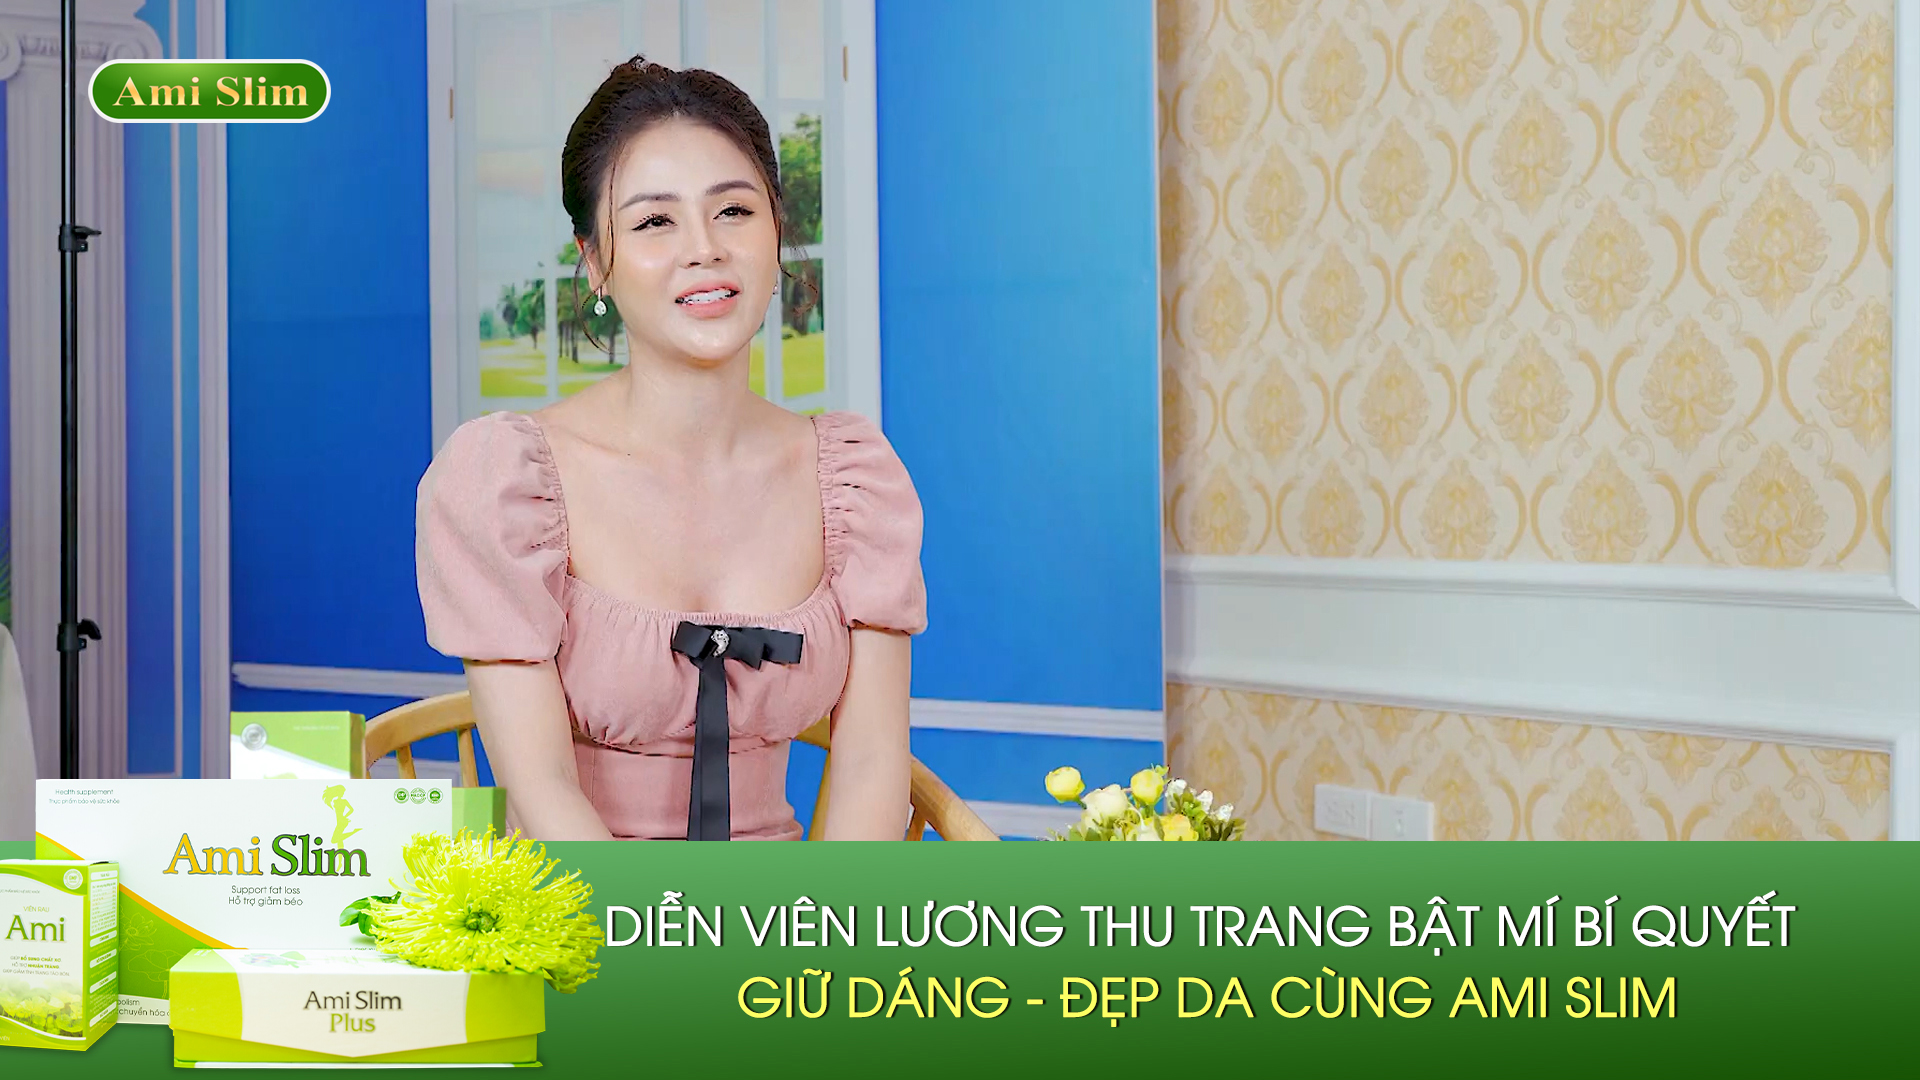 Diễn viên Lương Thu Trang bật mí bí quyết giữ dáng đẹp da cùng Ami Slim